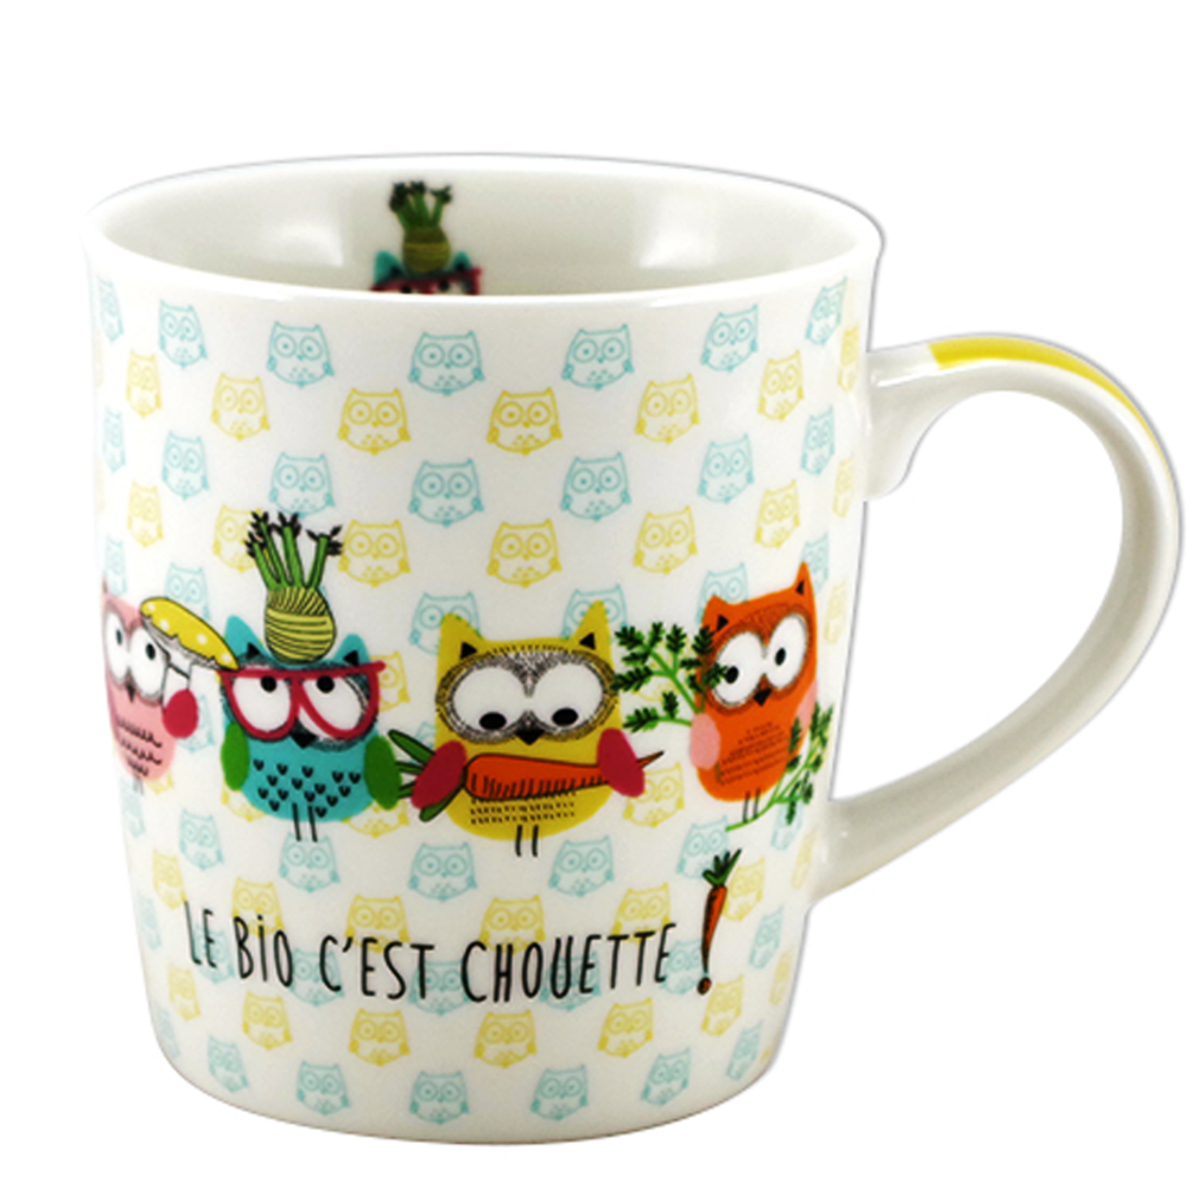 Mug porcelaine \'Chouettes\' multicolore (le bio c\'est chouette !) - 95x85 mm (32 cl) - [A2458]